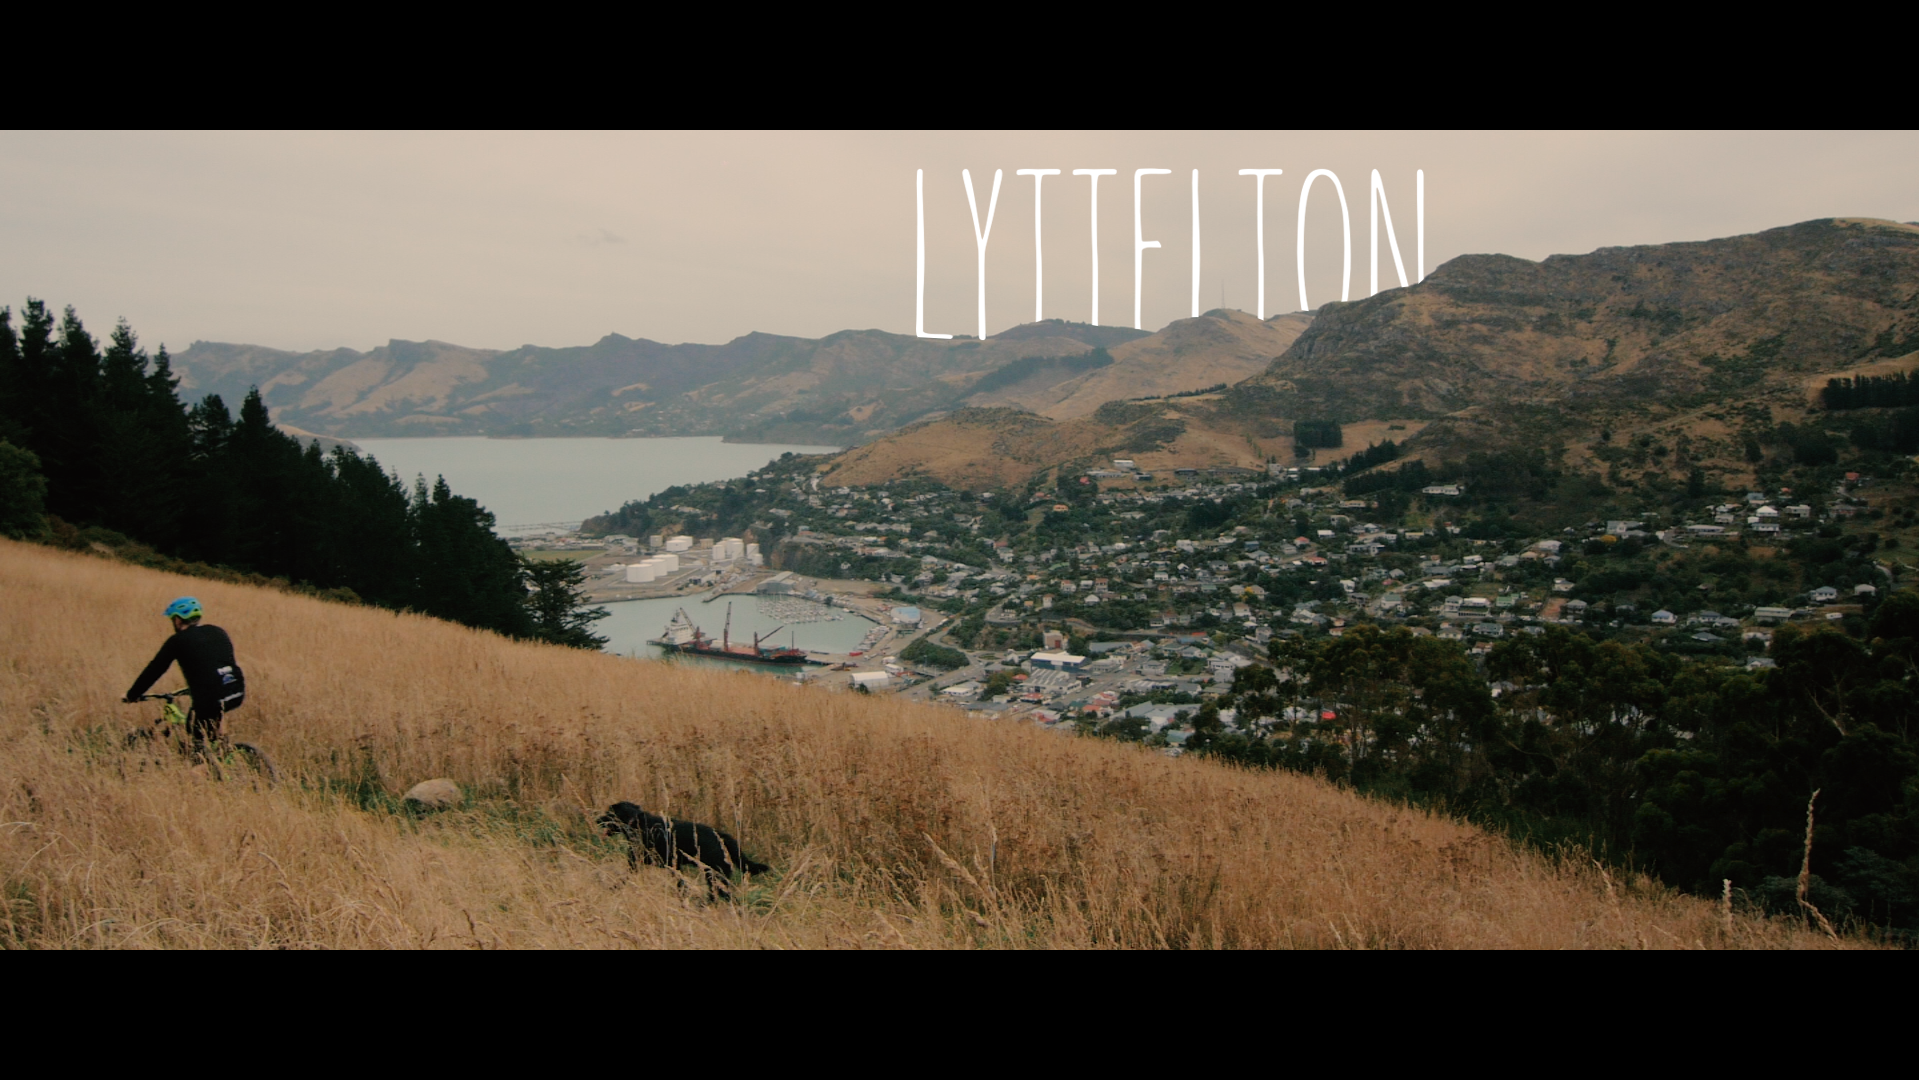 Lyttelton, Christchurch – New Zealand